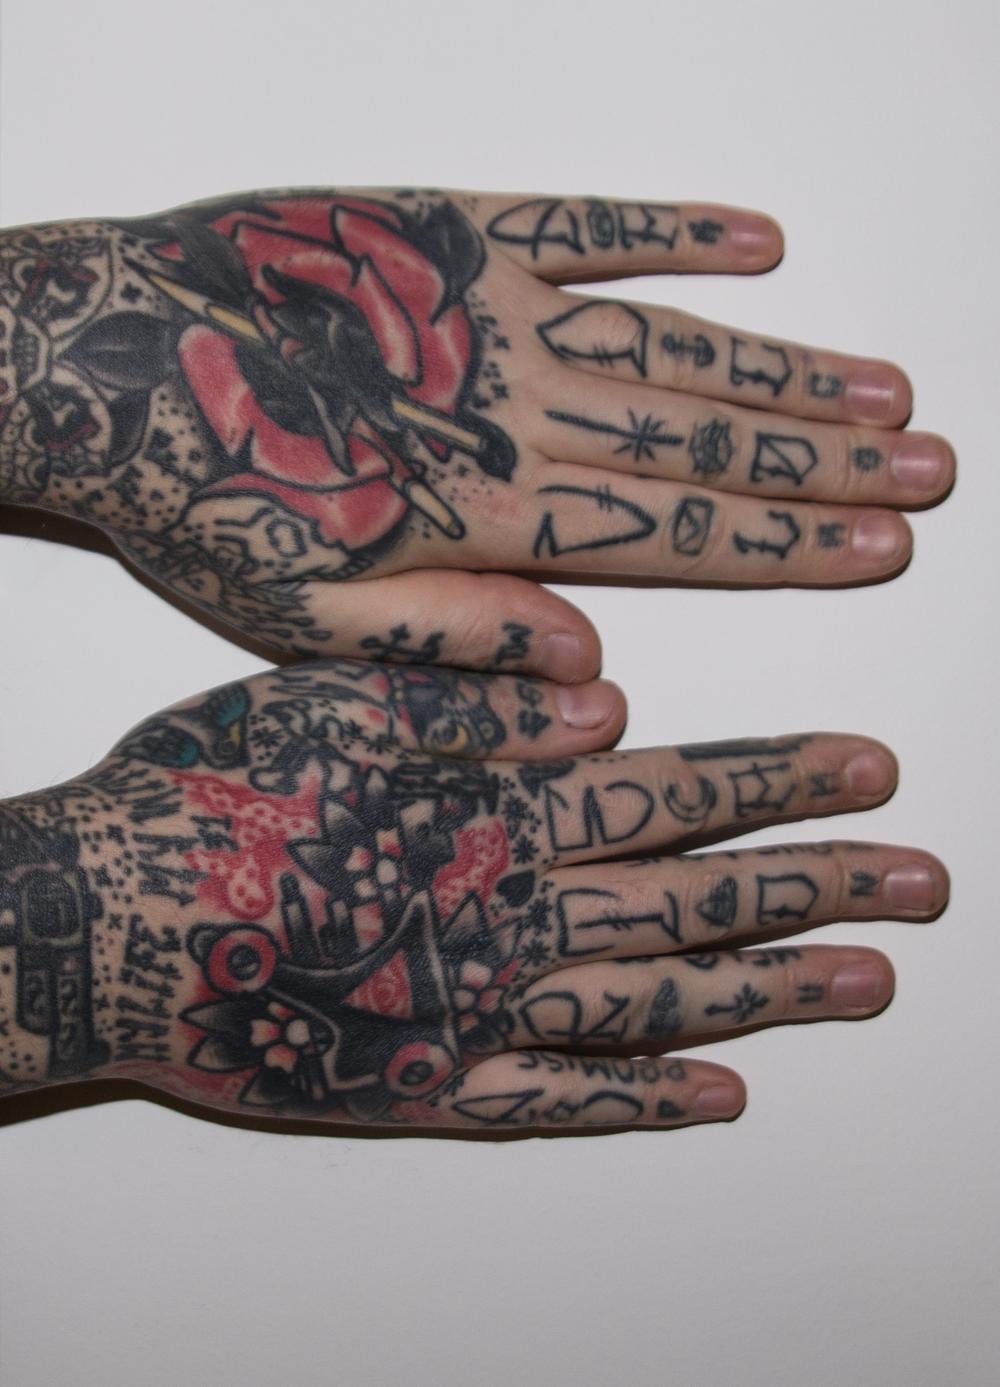 Kevin heeft beide handen laten tatoeëren. 